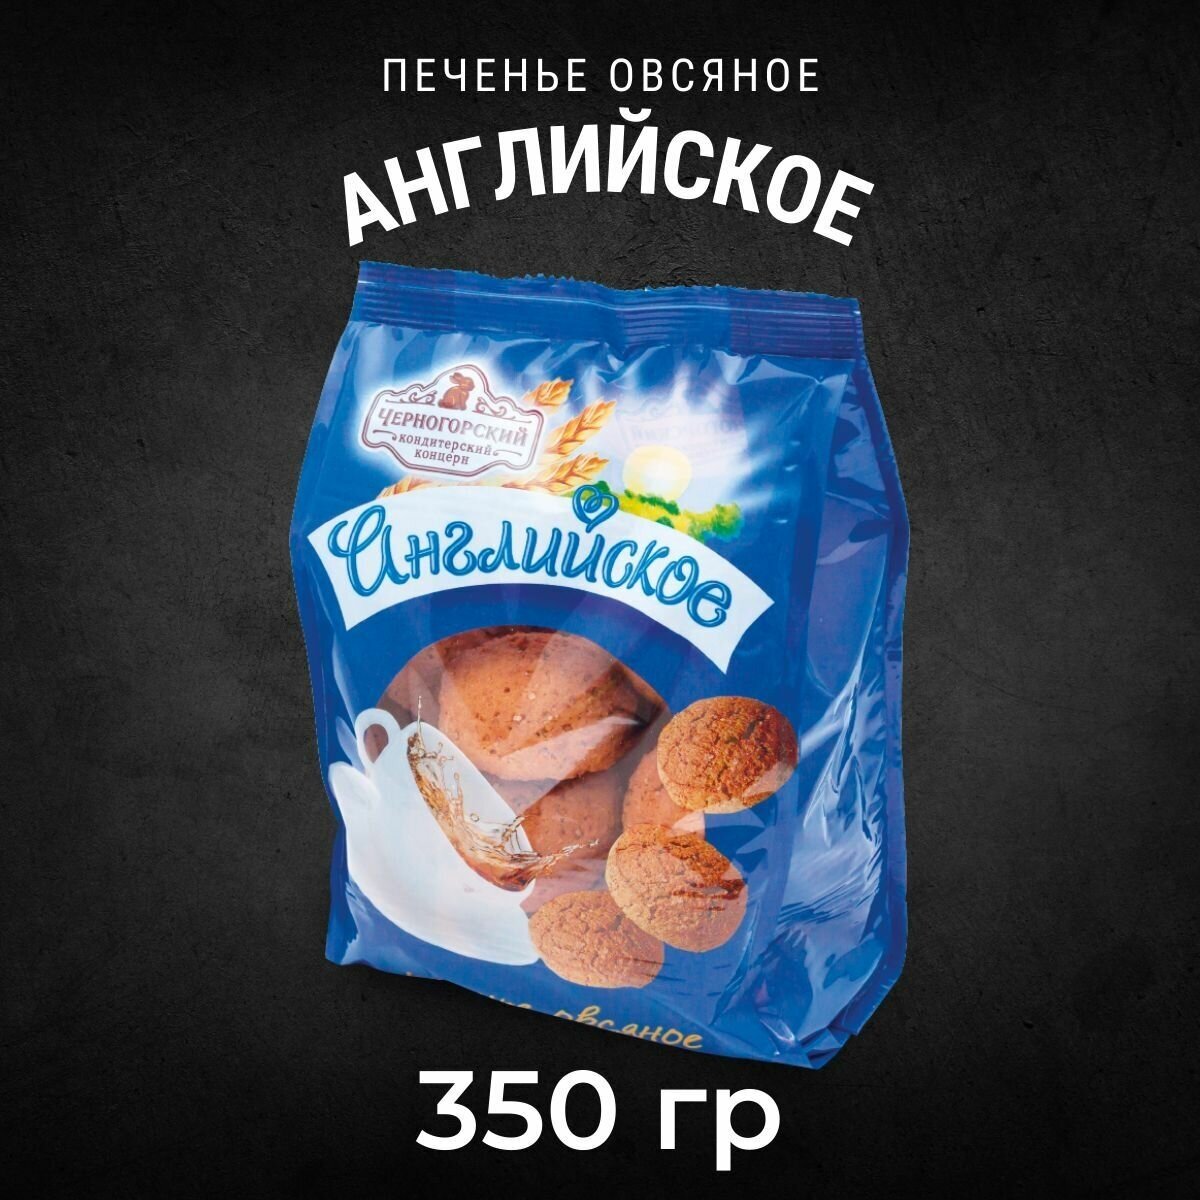 Печенье овсяное Черногорский английское цветной пакет 350 грамм - фотография № 1